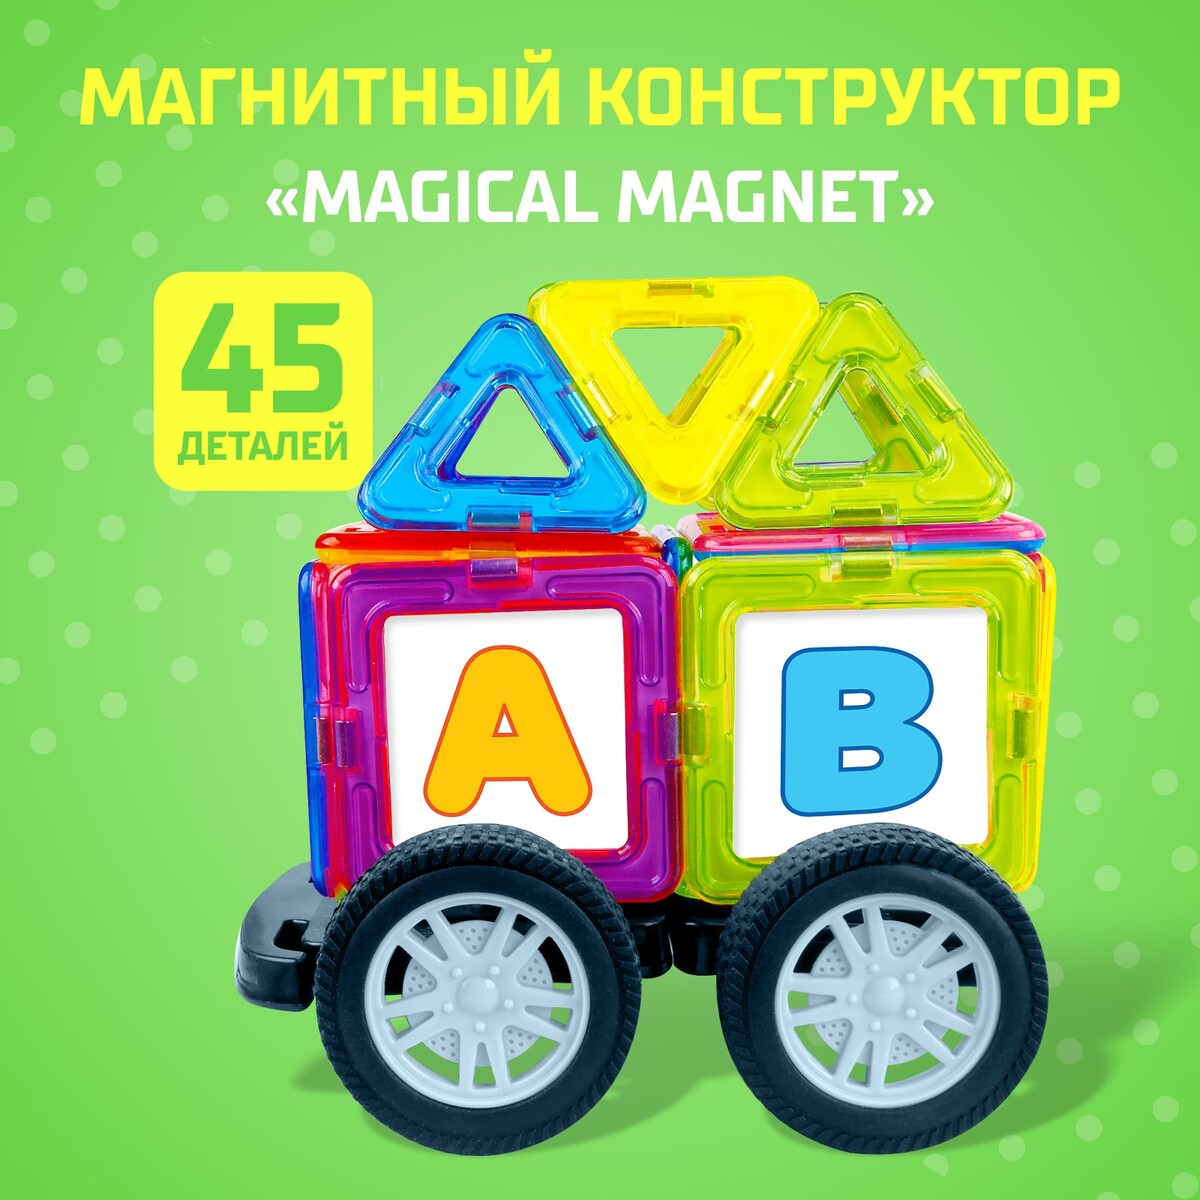 Магнитный конструктор magical magnet, 45 деталей, детали матовые магнитный конструктор magical magnet 34 детали детали матовые